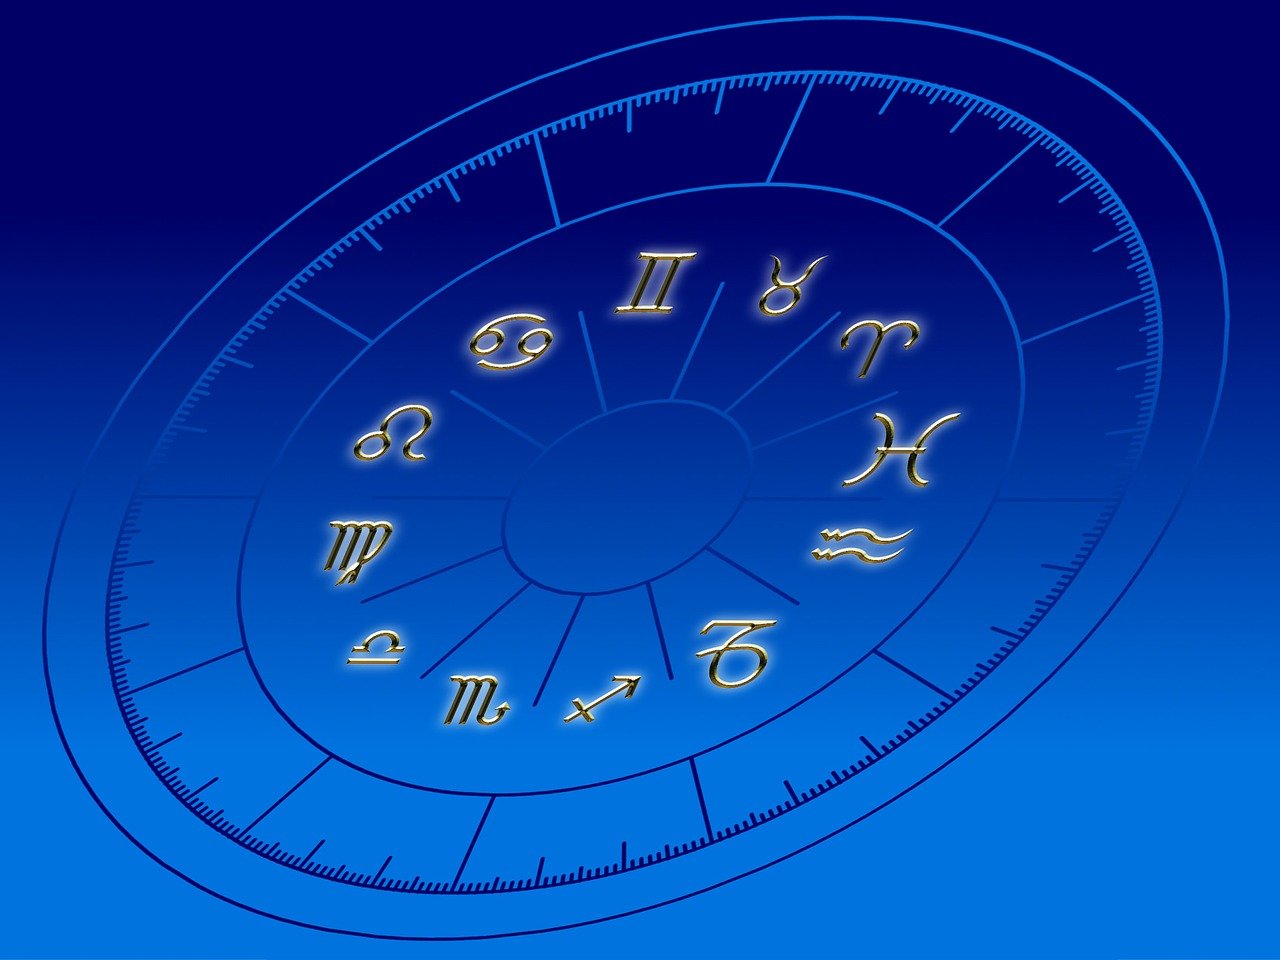 Da li dnevni Horoskop može biti opasan? Astrologija između pseudonauke i manipulacija